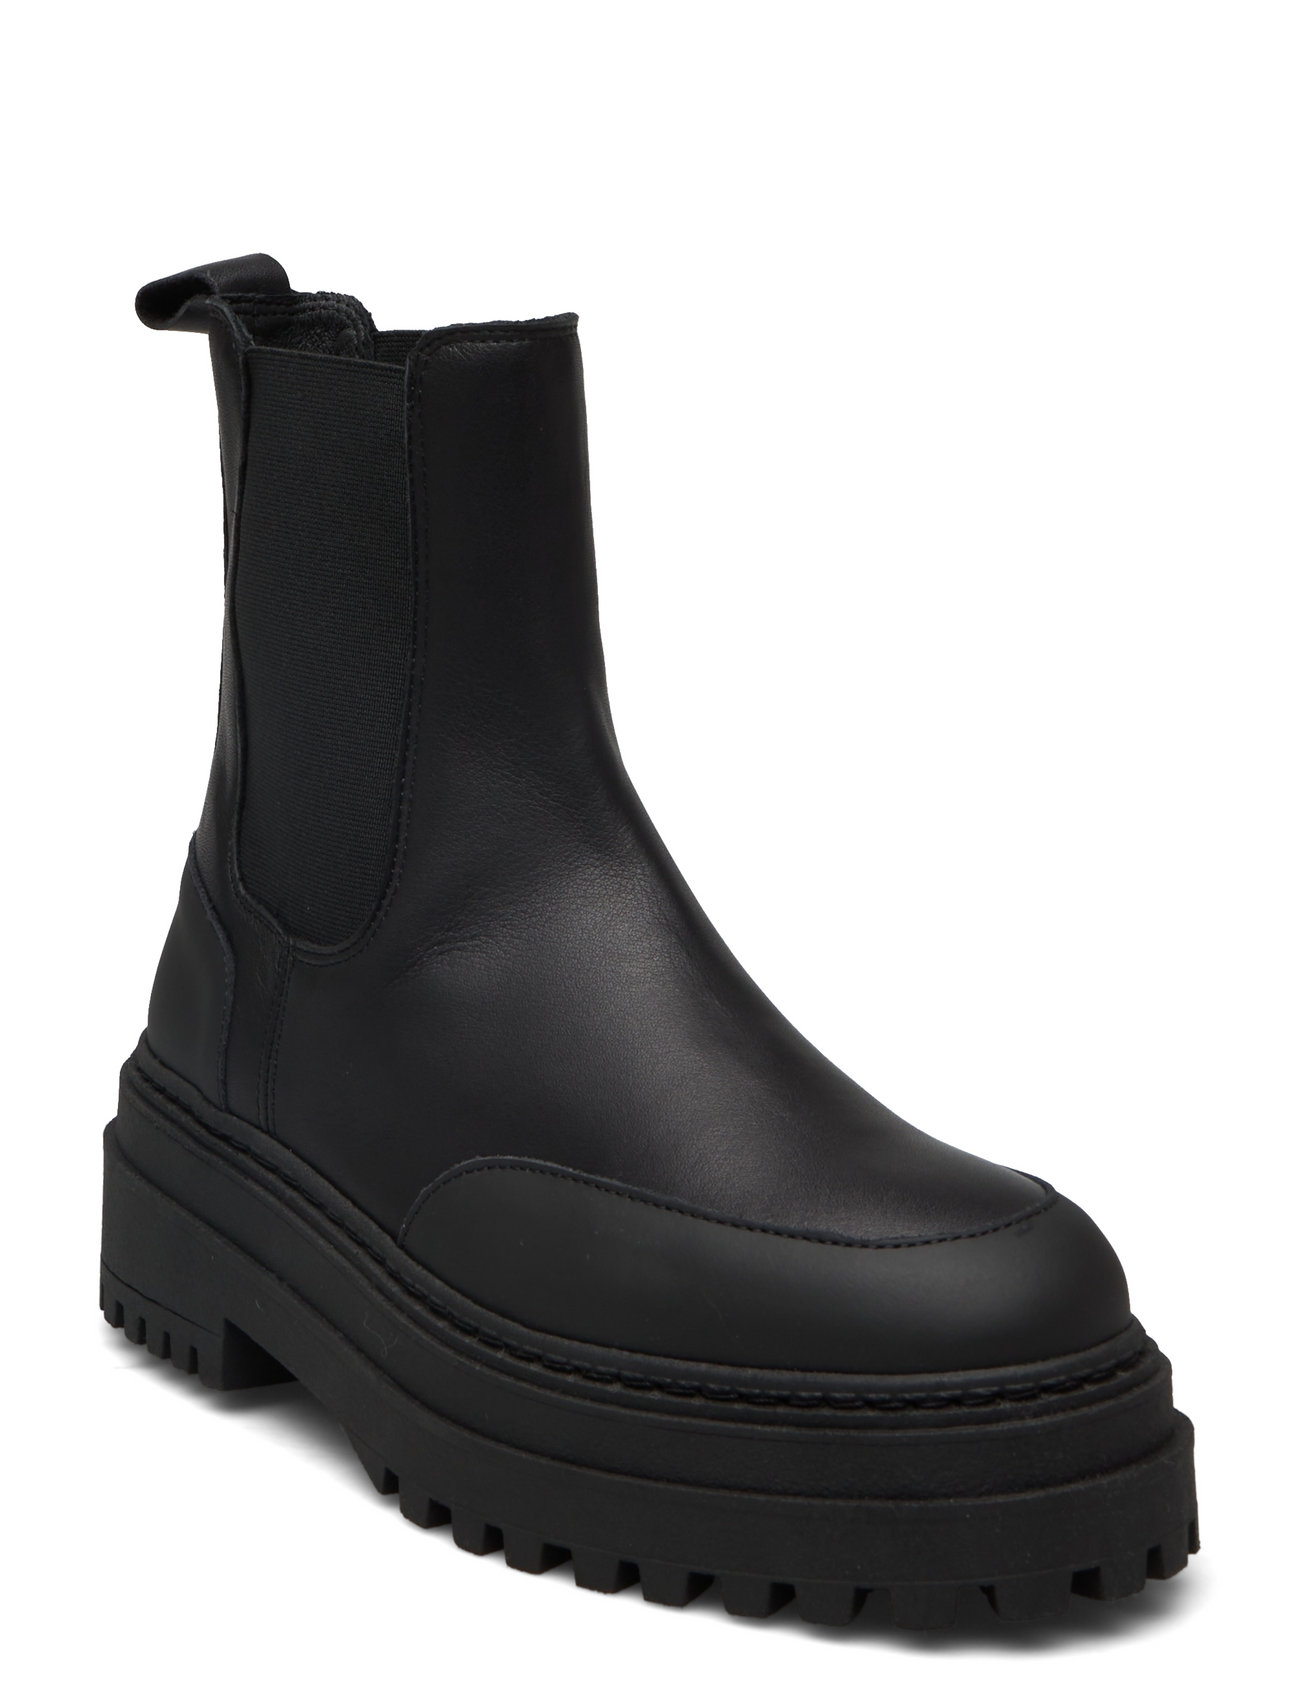 Sophie skrå Moralsk Selected Femme Slfasta New Chelsea Leather Boot B - Chelsea støvler -  Boozt.com